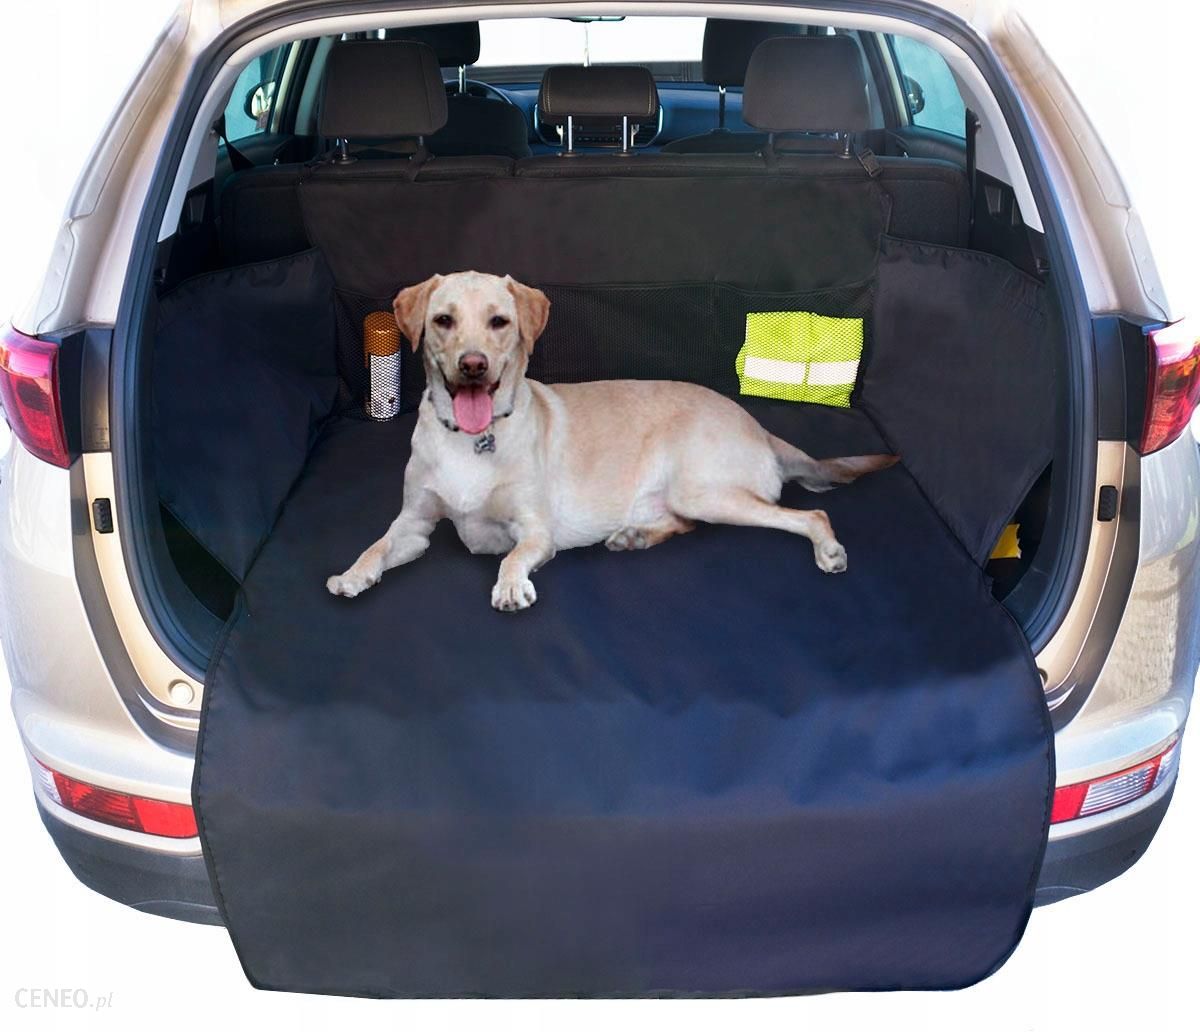 Pokrowiec Mata do Bagażnika samochodu auta dla Psa Ceny